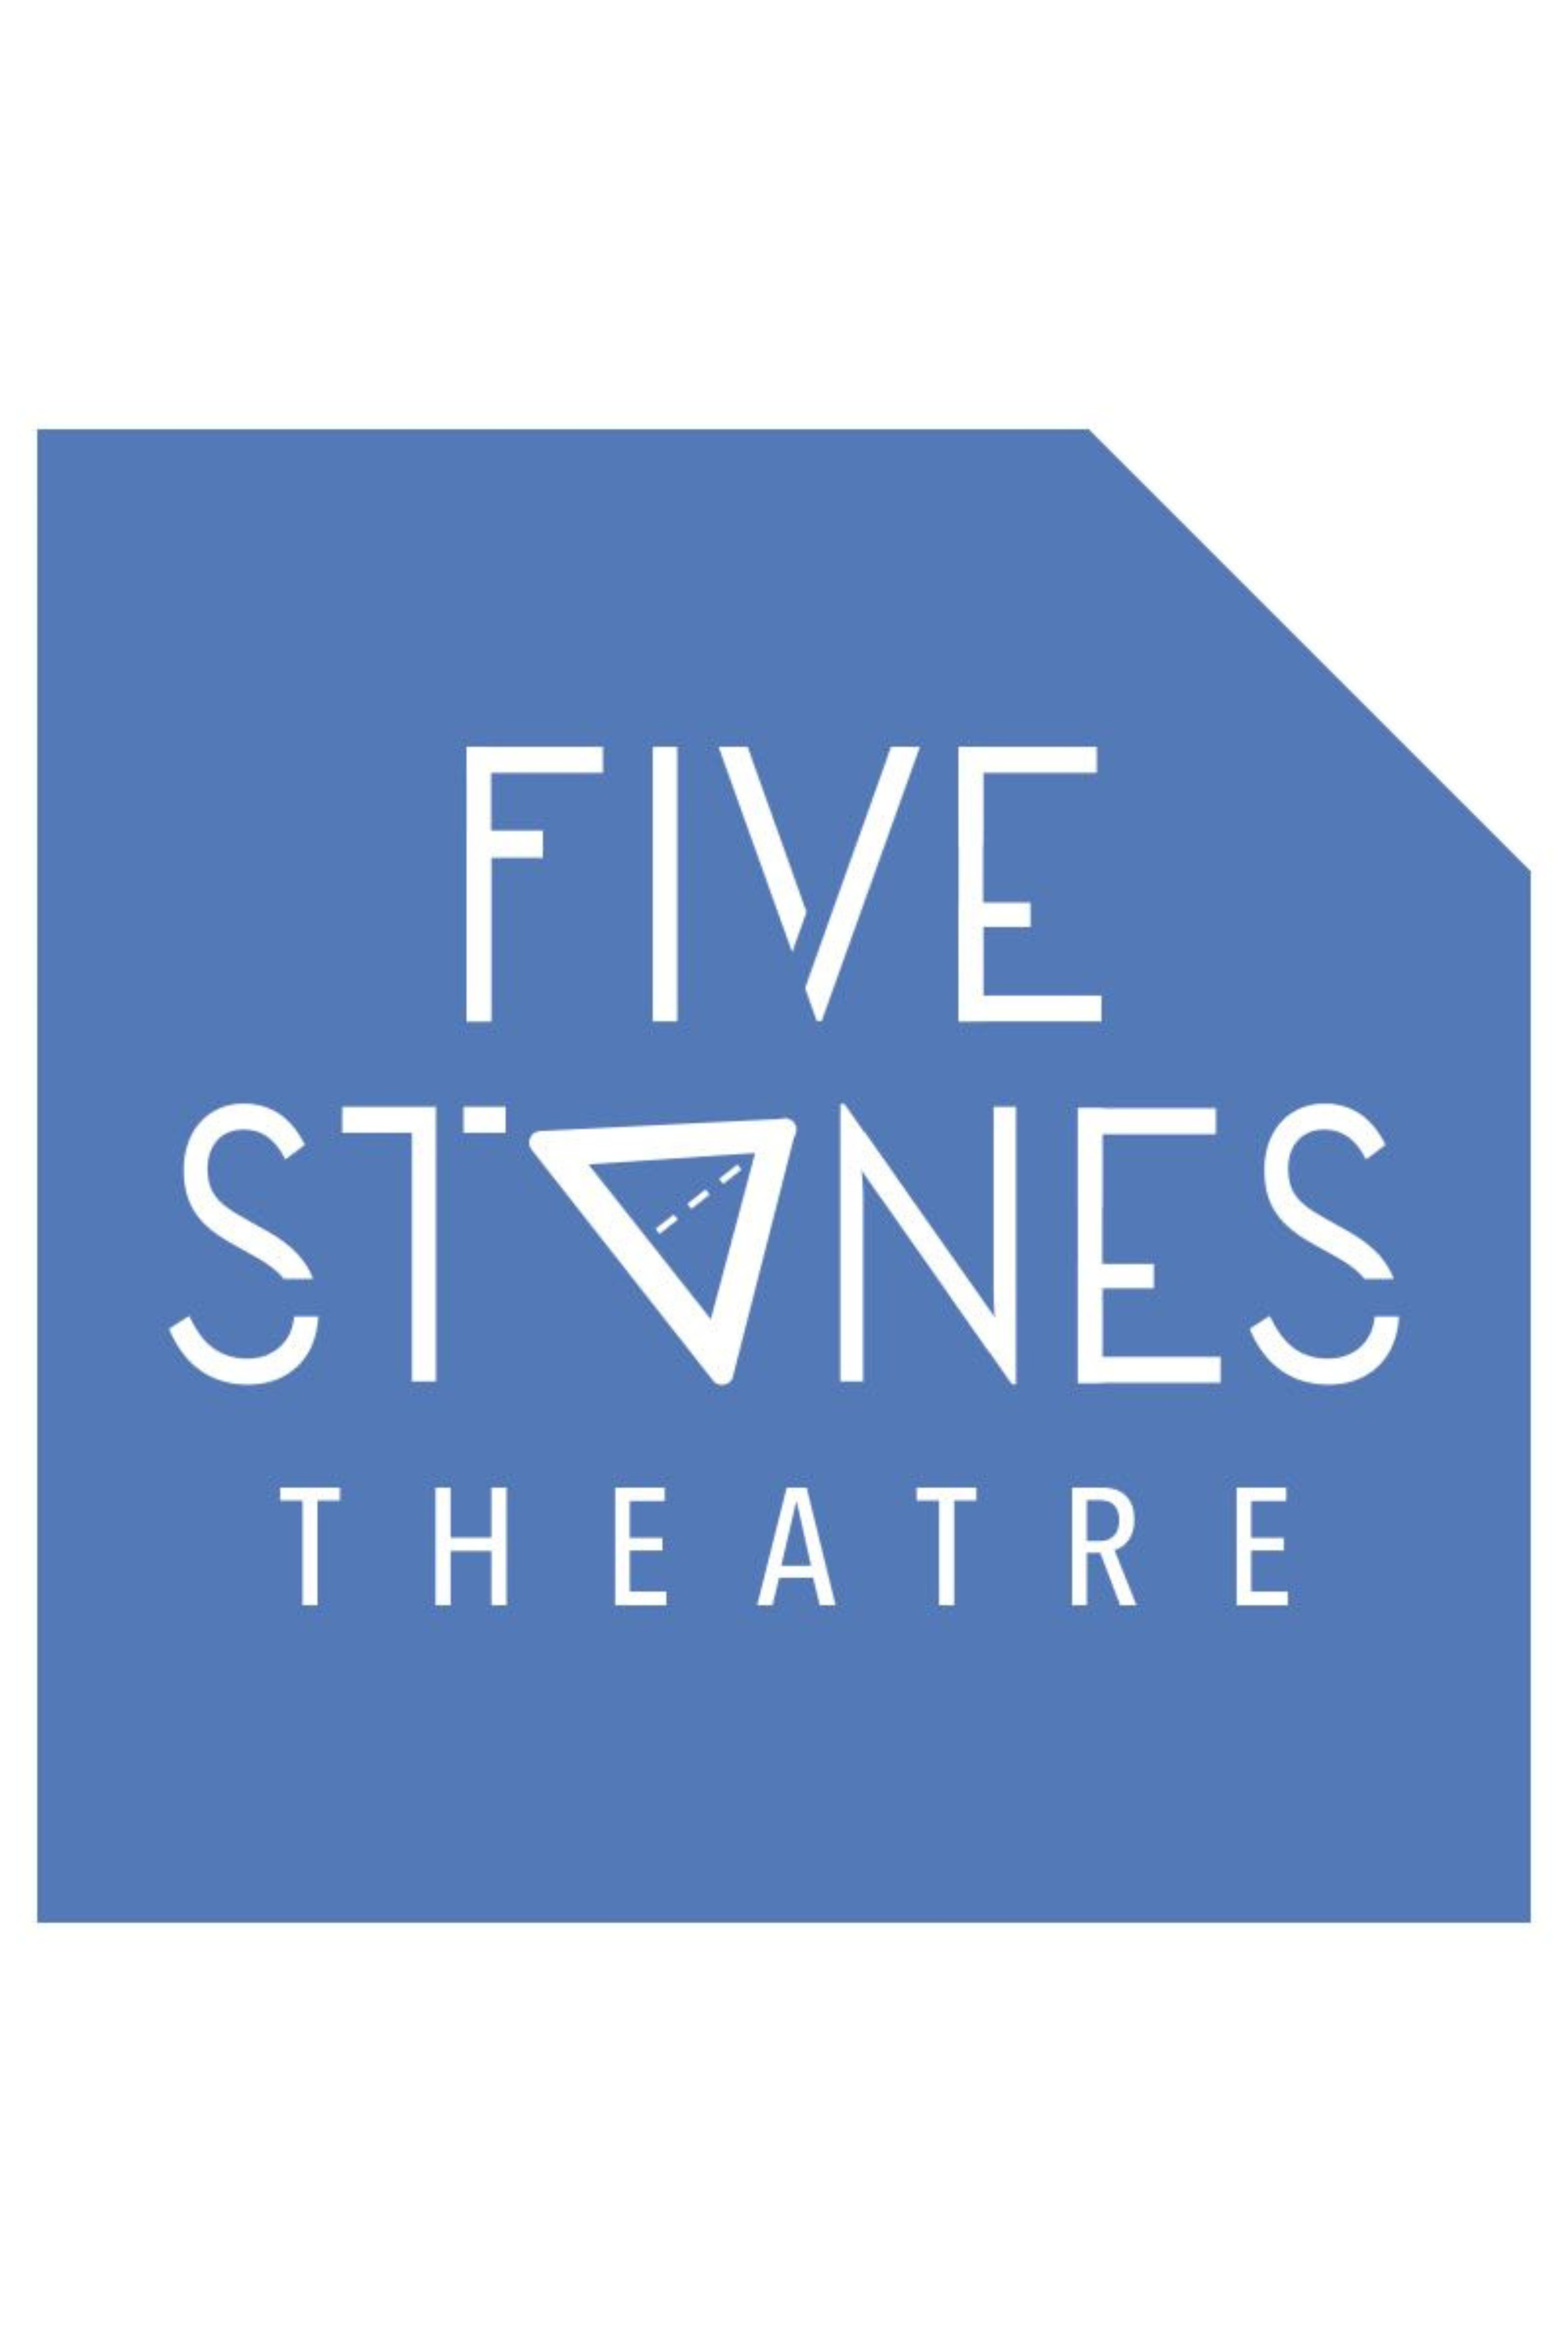 Five Stones Theatre